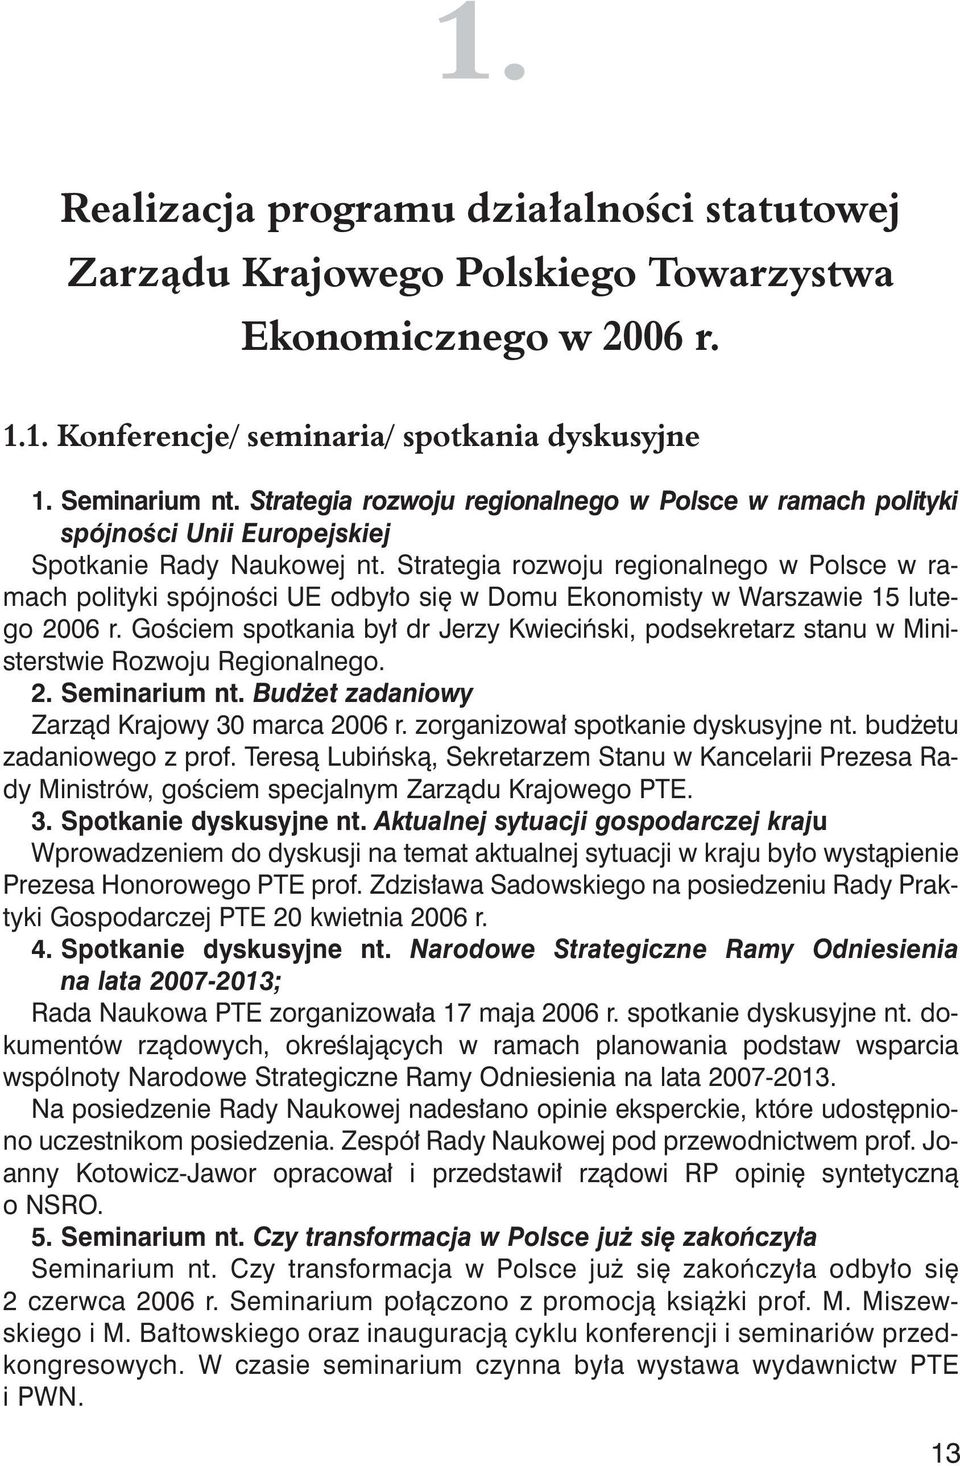 Strategia rozwoju regionalnego w Polsce w ramach polityki spójności UE odbyło się w Domu Ekonomisty w Warszawie 15 lutego 2006 r.